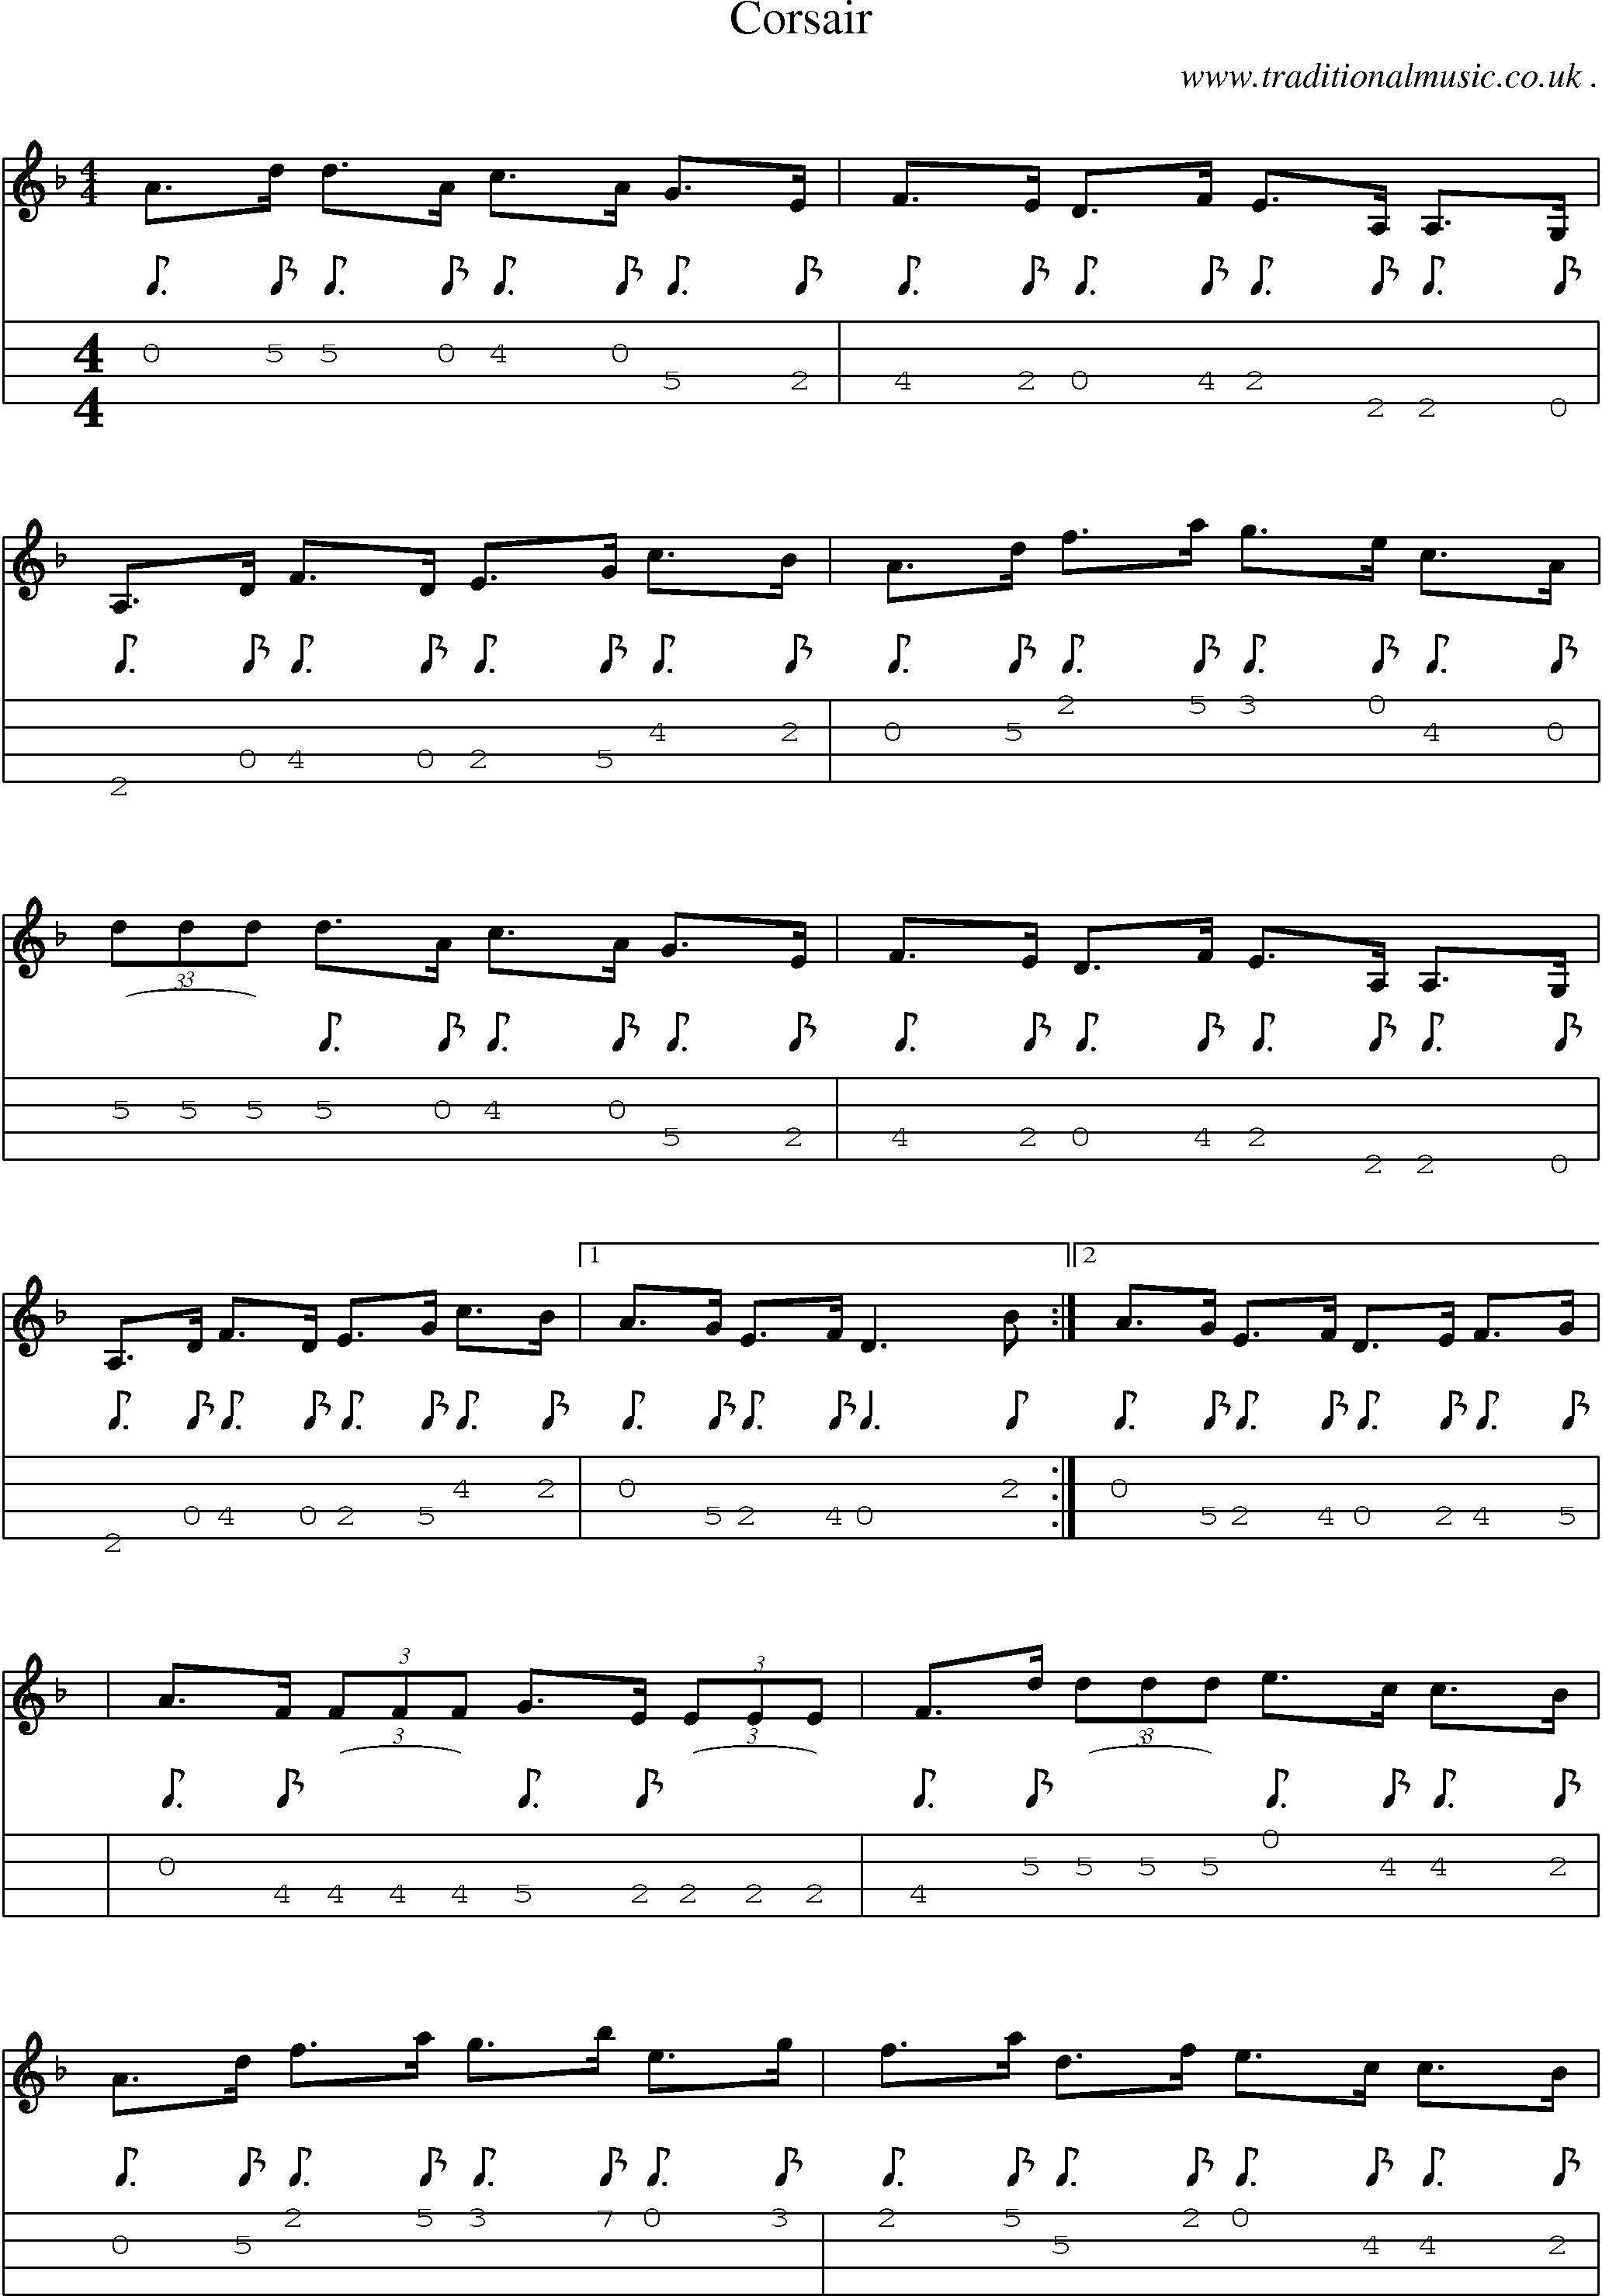 Sheet-Music and Mandolin Tabs for Corsair